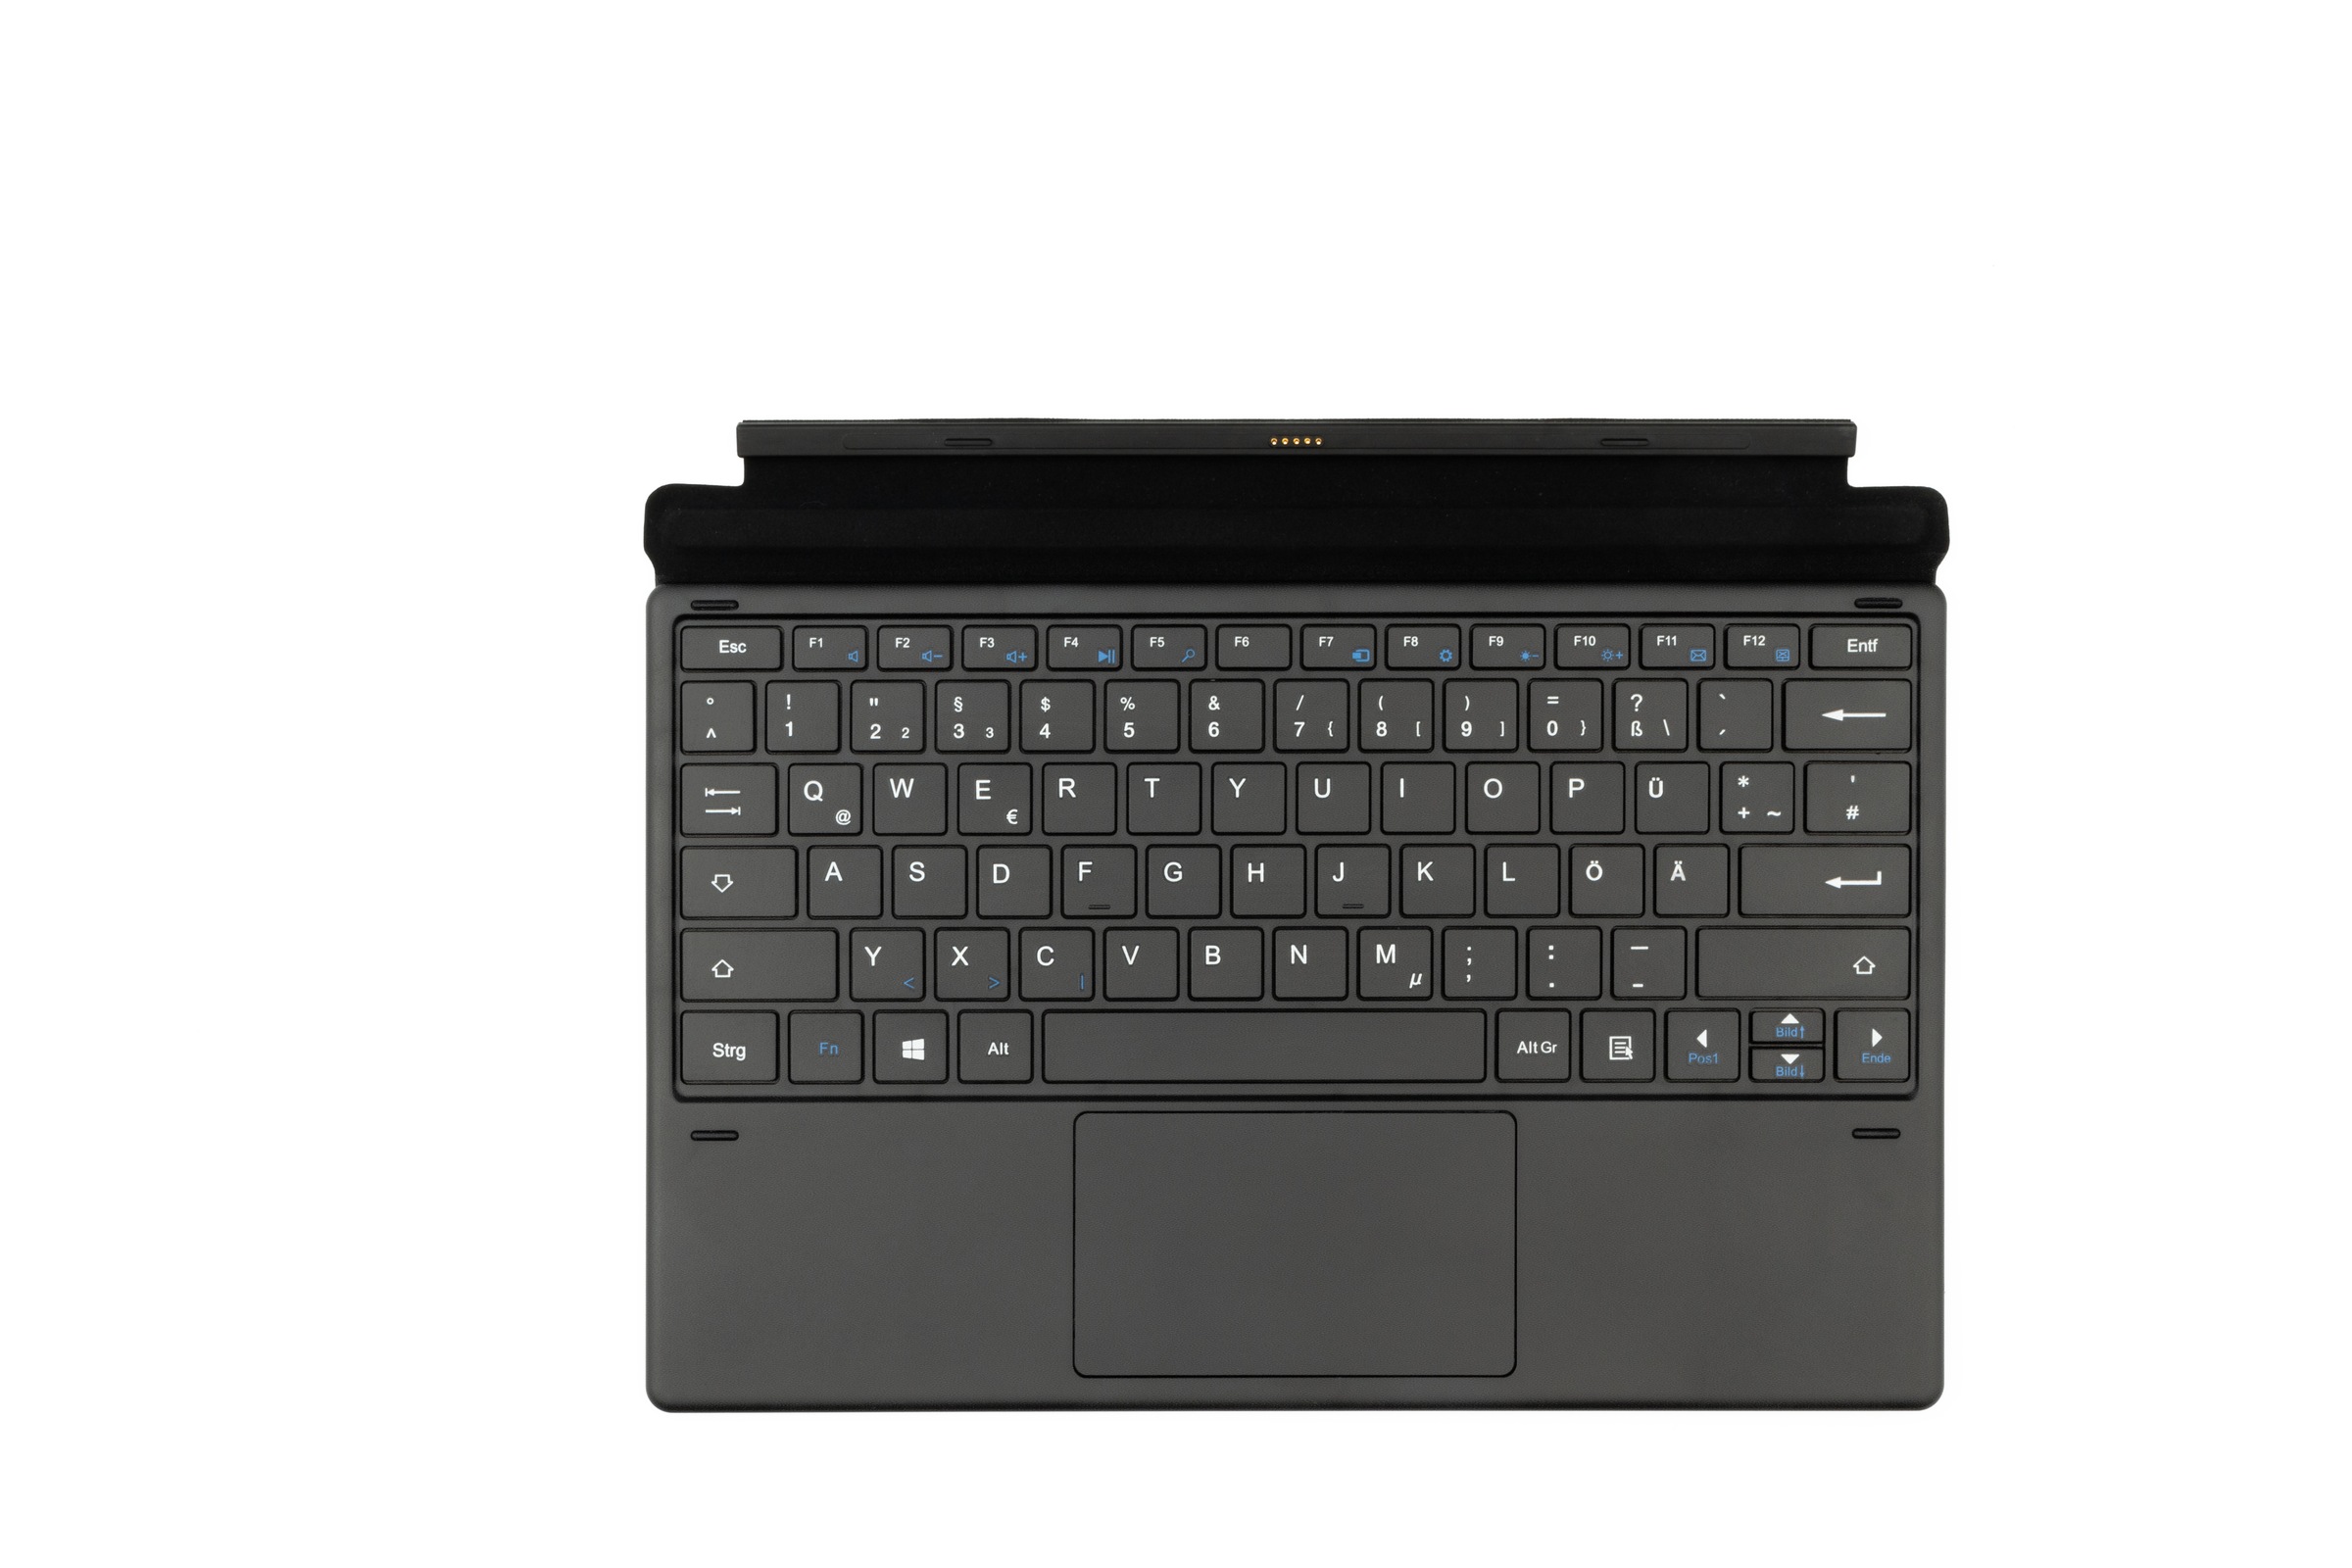 Hyrican Tablet »ENWO Pad, Business Tablet mit Tastatur, Convertible Notebook«, (Windows Qualcomm ARM CPU, BT 5.0, kostenloses Windows 11 Upgrade)